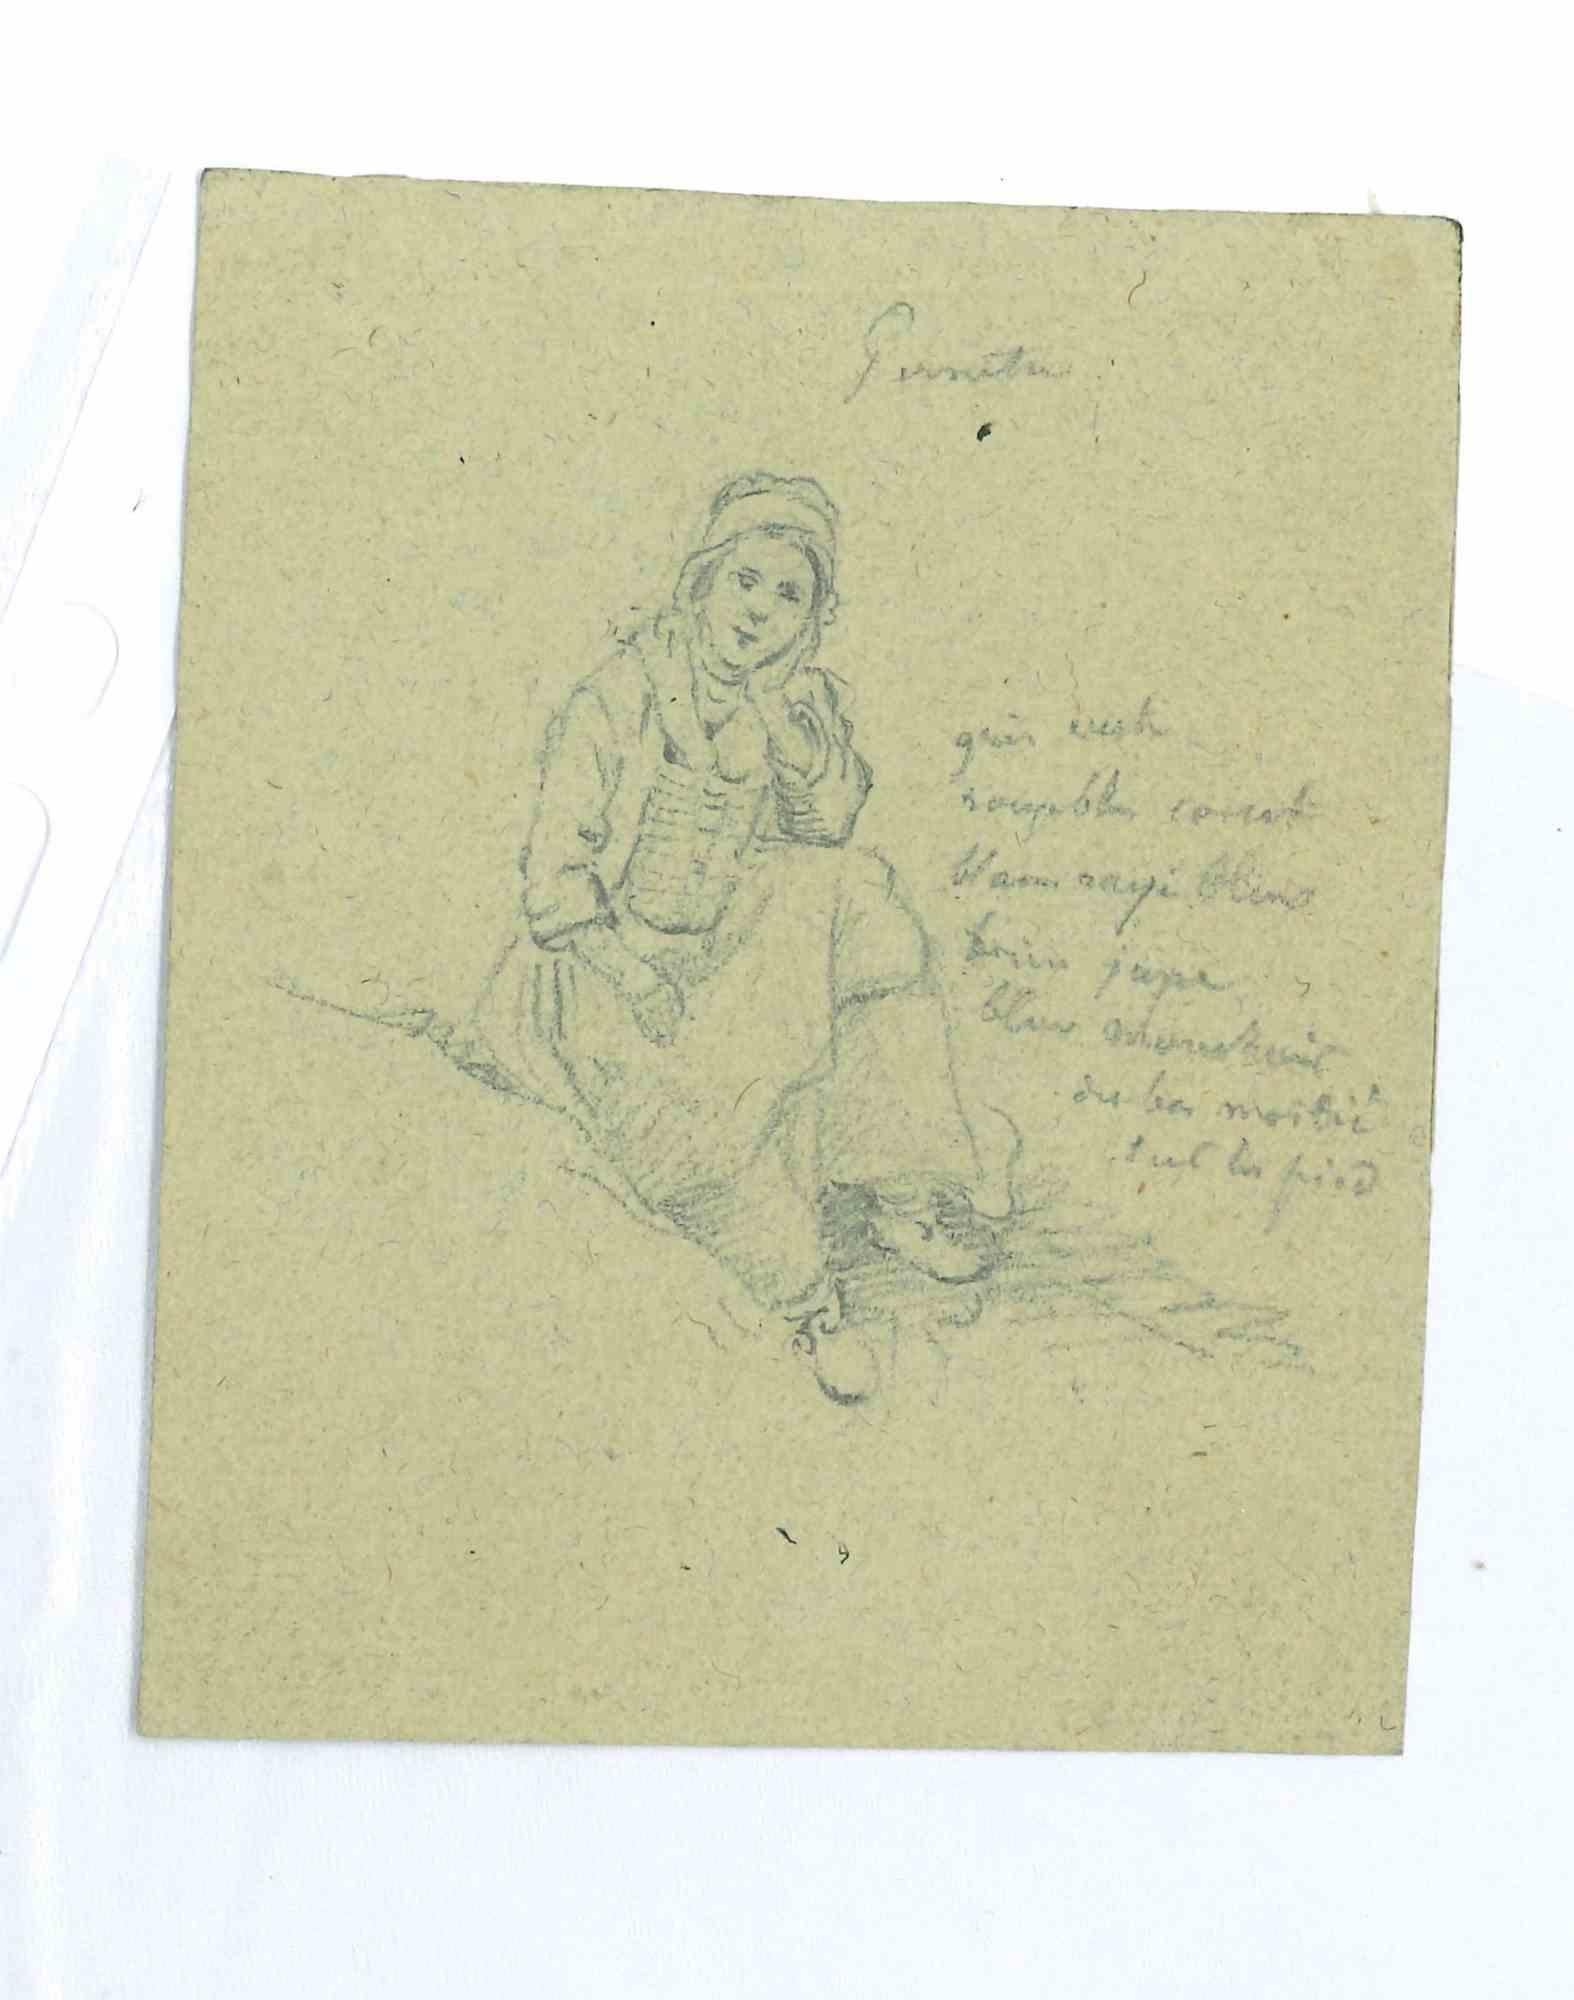 La jeune fille est un dessin original au crayon réalisé au 19ème siècle par Paul Huet (1803-1869).

Avec un autre dessin au verso.

En bon état. 

L'œuvre d'art est représentée habilement par des traits délicats et habiles.